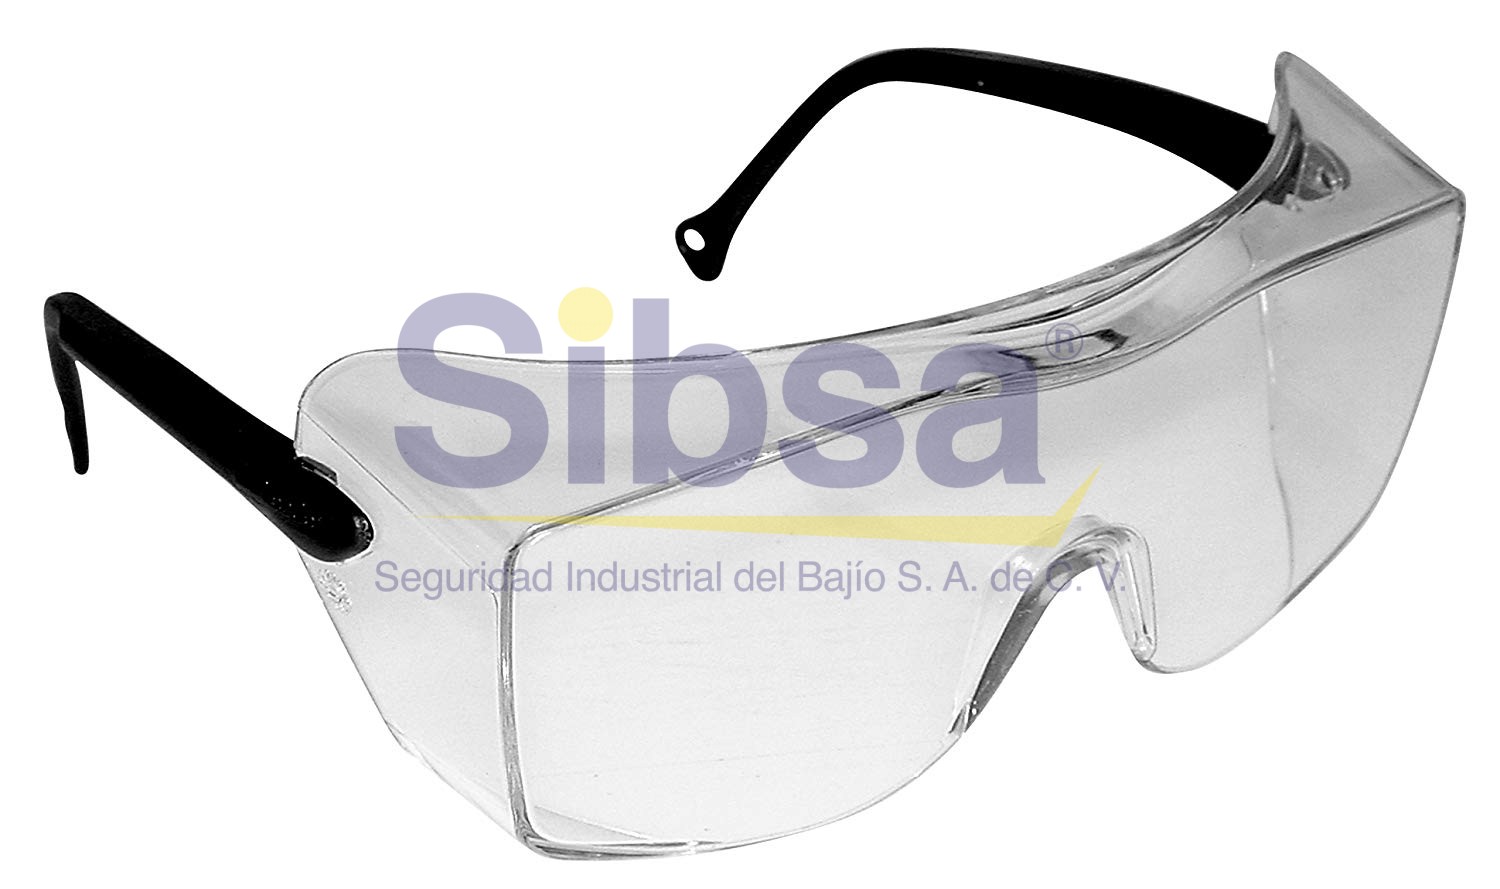 Gafas de seguridad 511 anti-rayado p/caras pequeñas - Material de